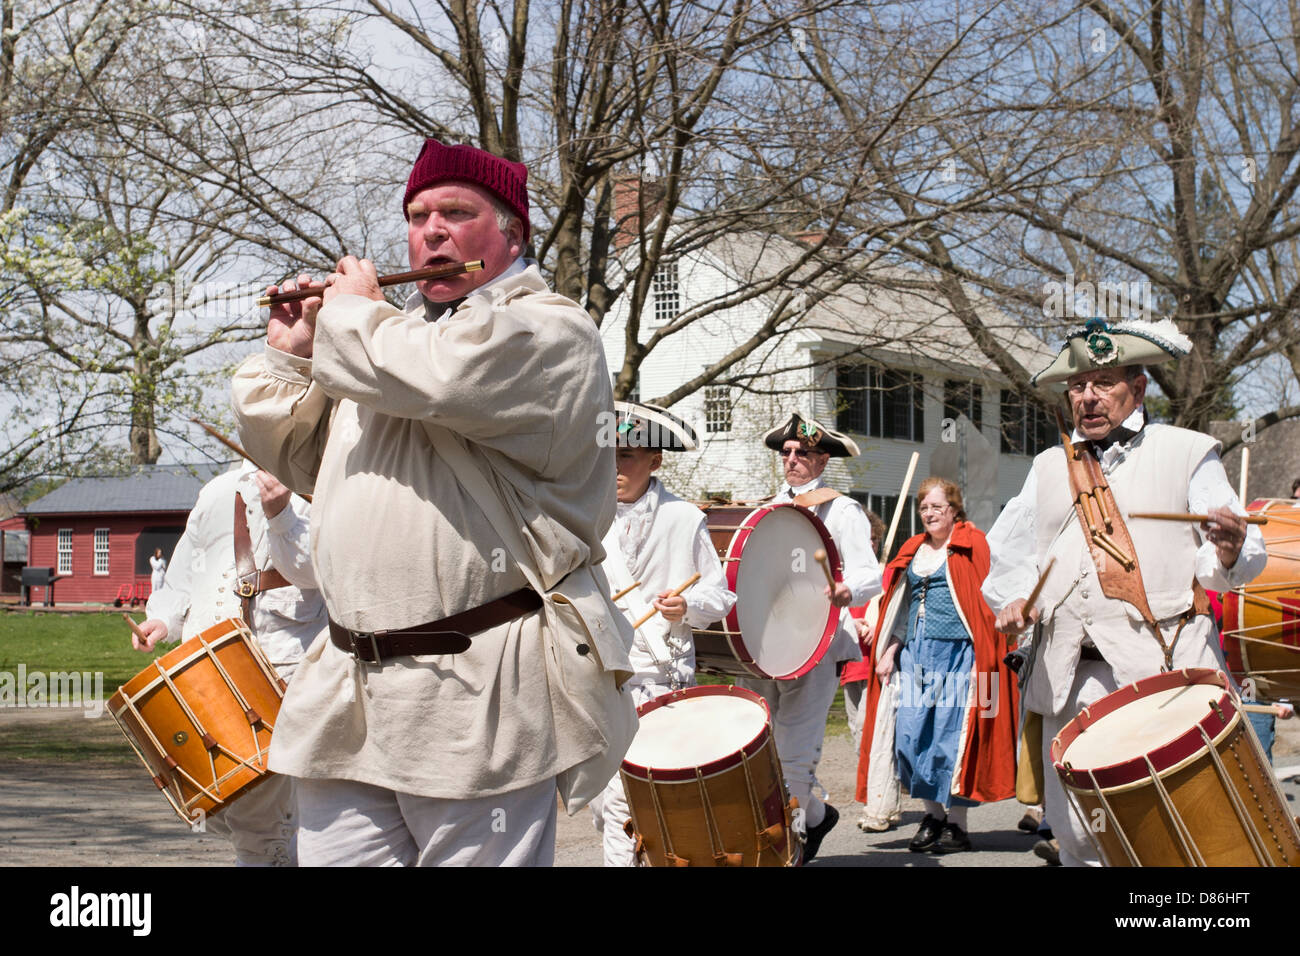 Re-enactment marschieren in die Parade markiert den Beginn des Unabhängigkeitskrieges in historischen Deerfield, Massachusetts. Stockfoto